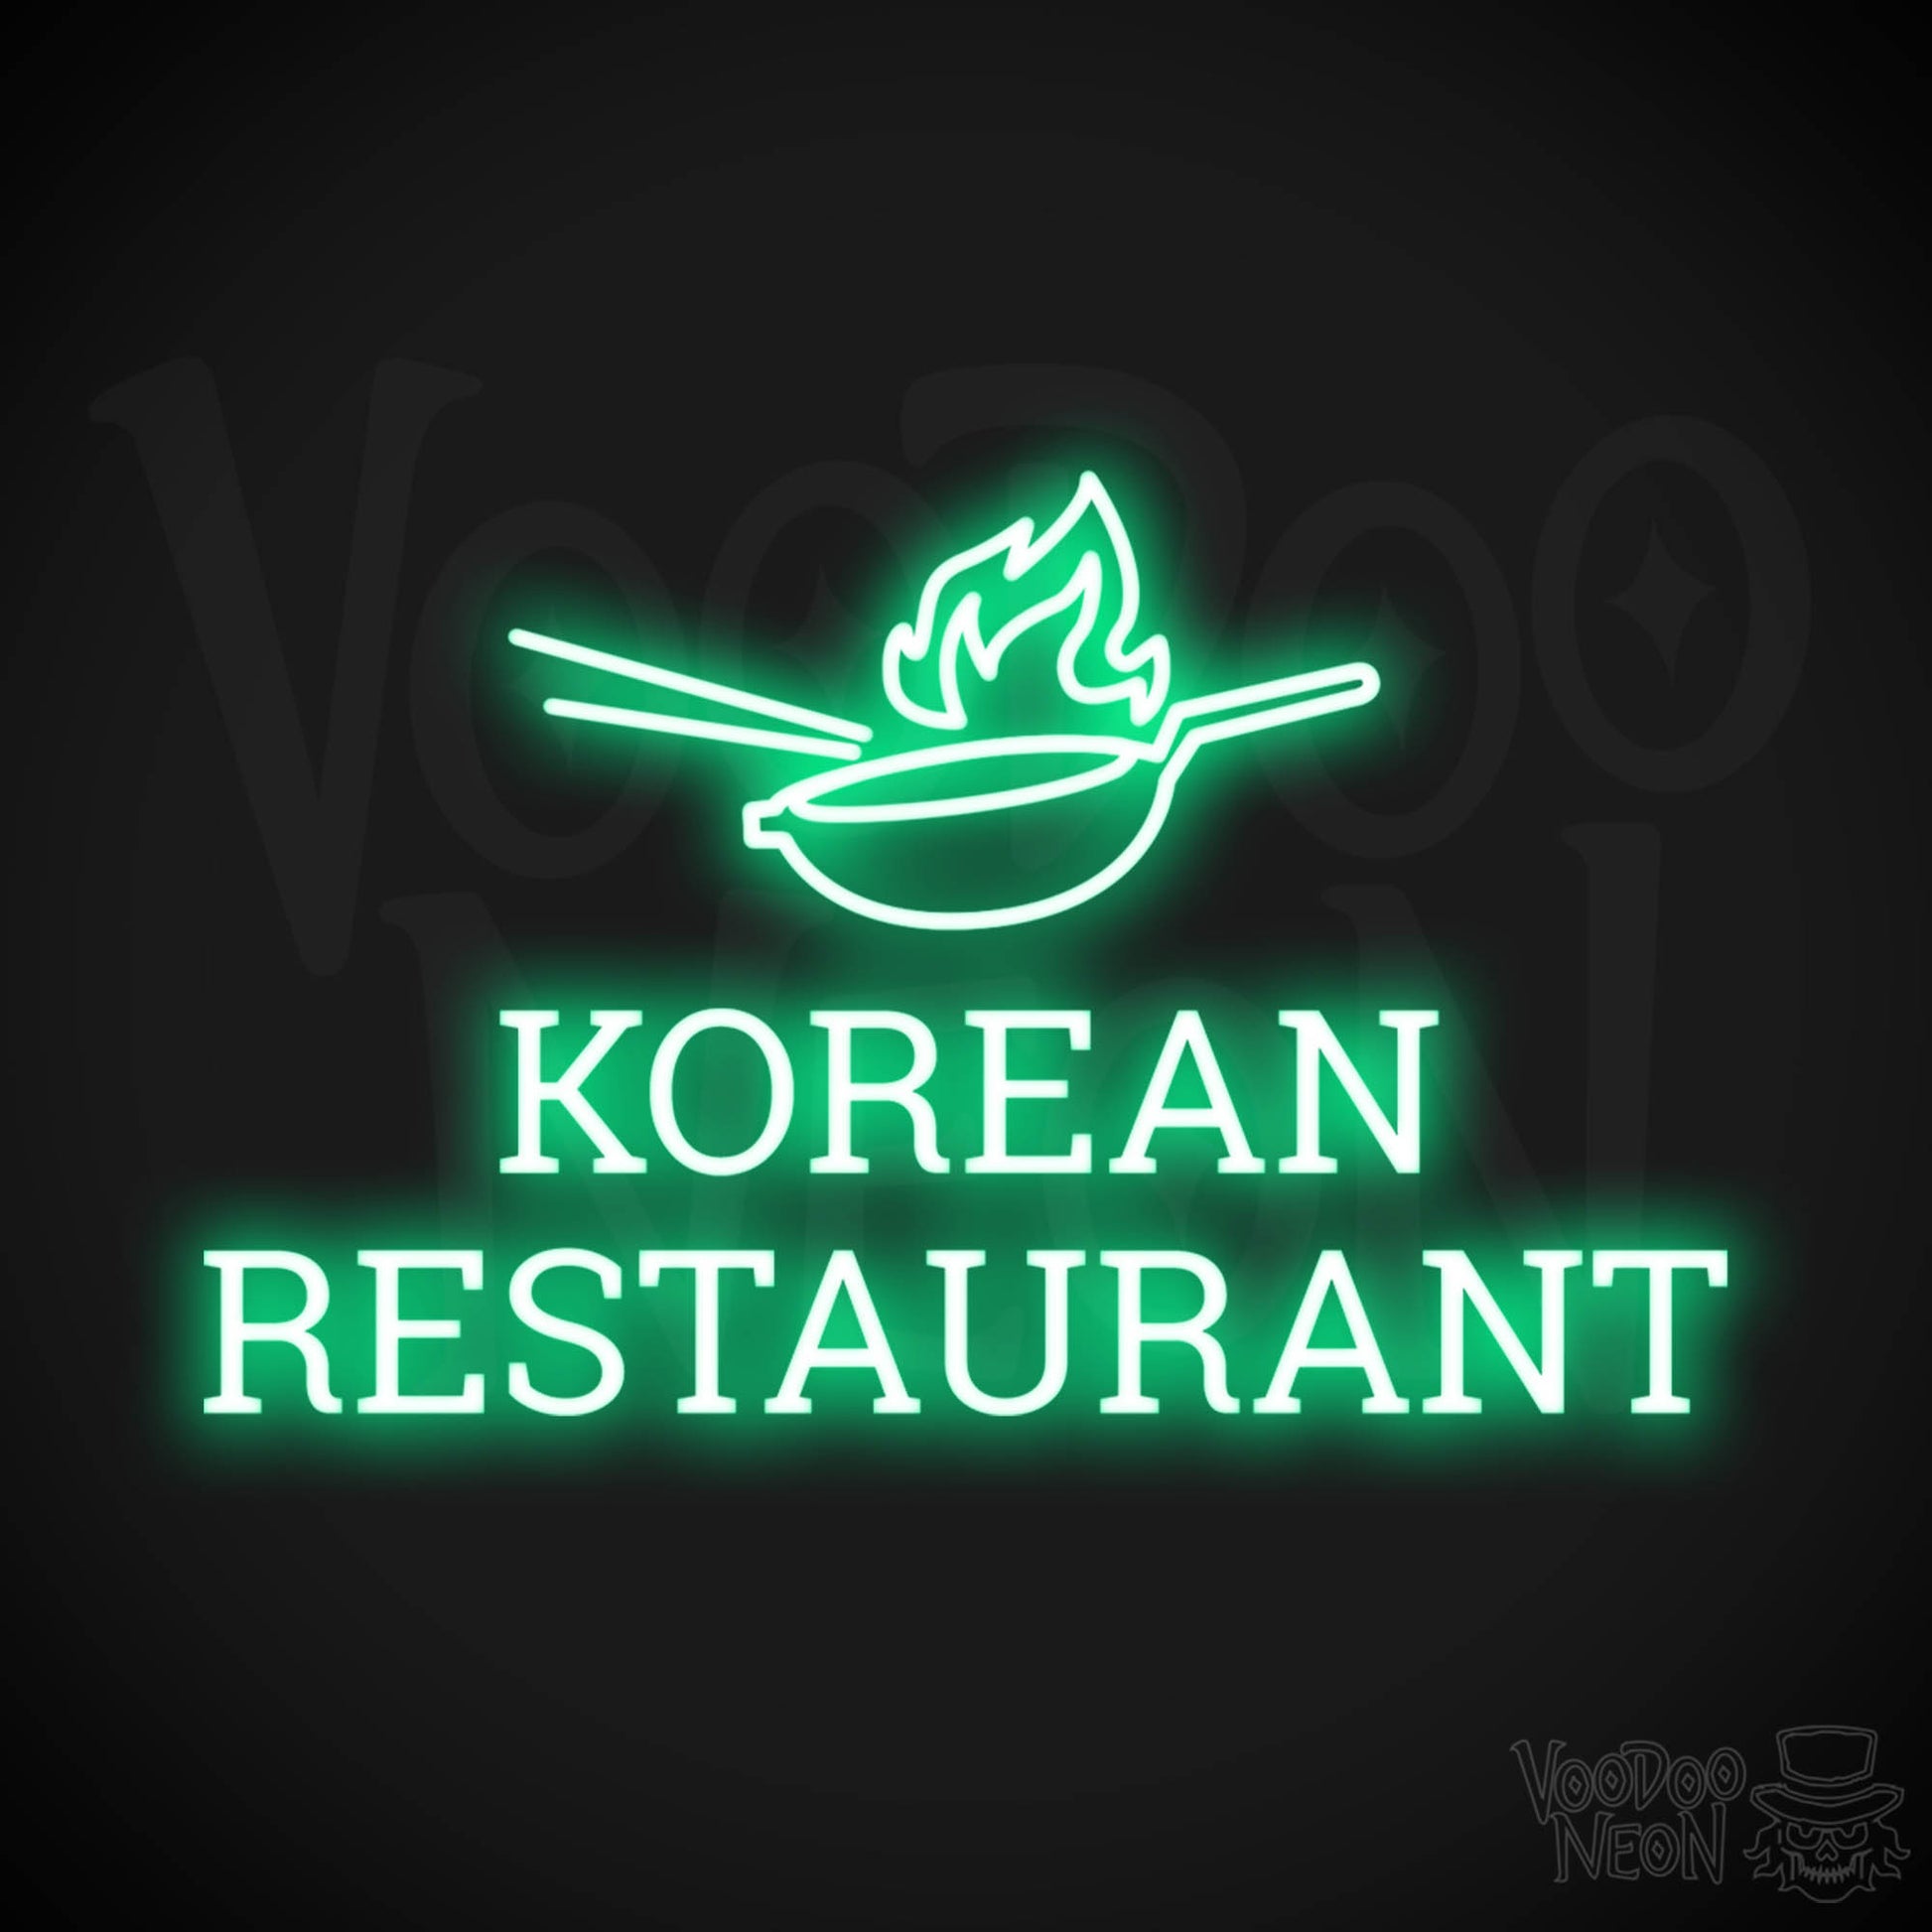 Korean Restaurant LED Neon - Green